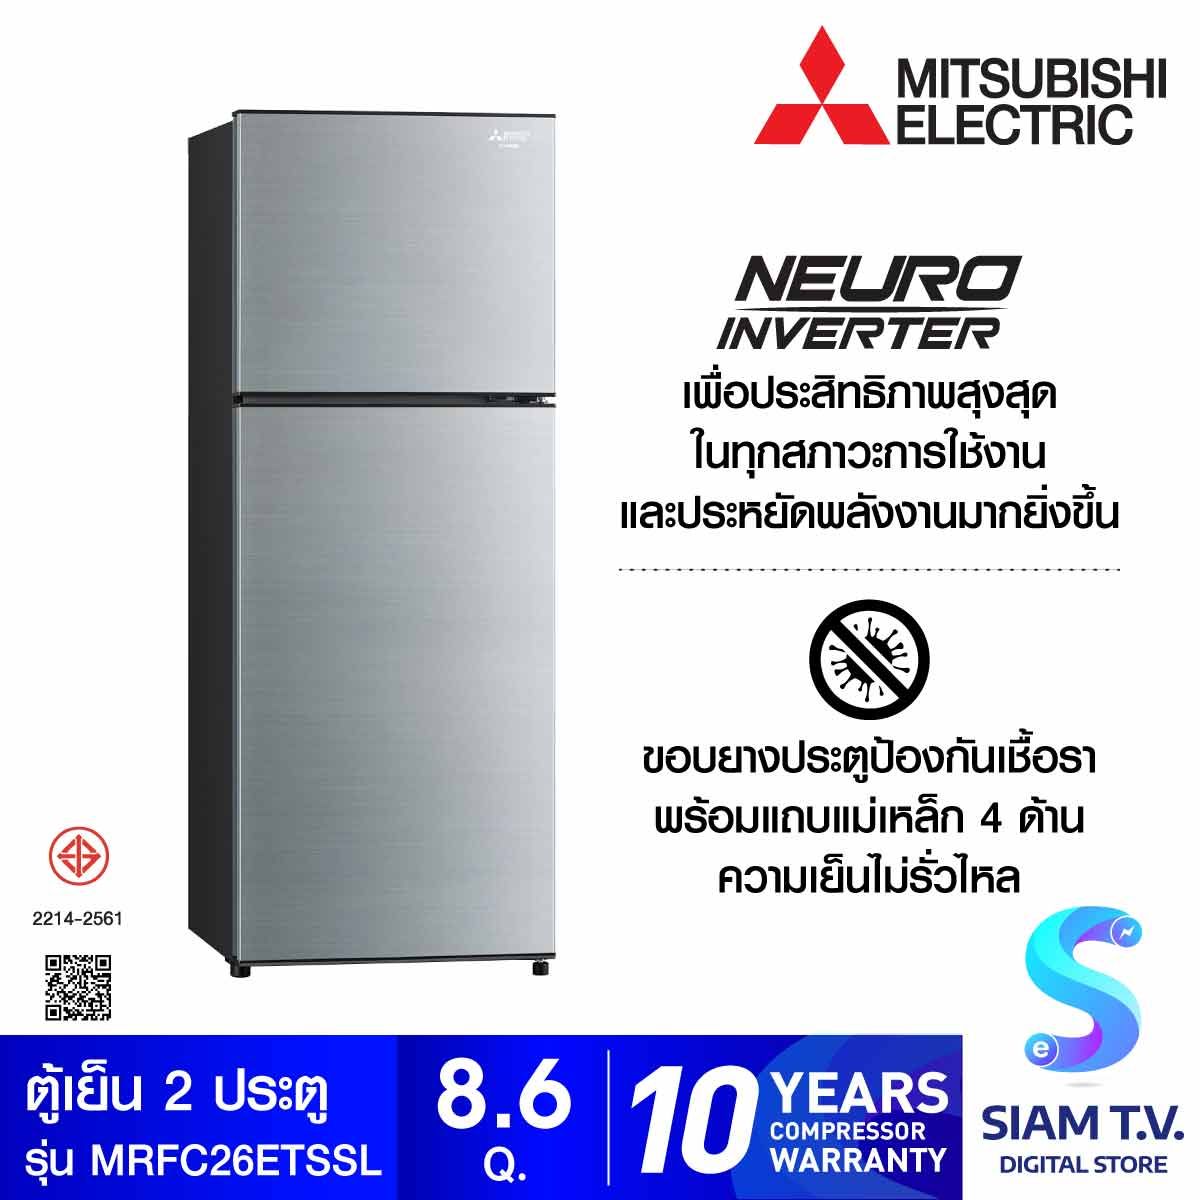 MITSUBISHI ELECTRIC  ตู้เย็น 2 ประตู NEURO INVERTER 8.6 คิว สีเงิน รุ่น MR-FC26ET